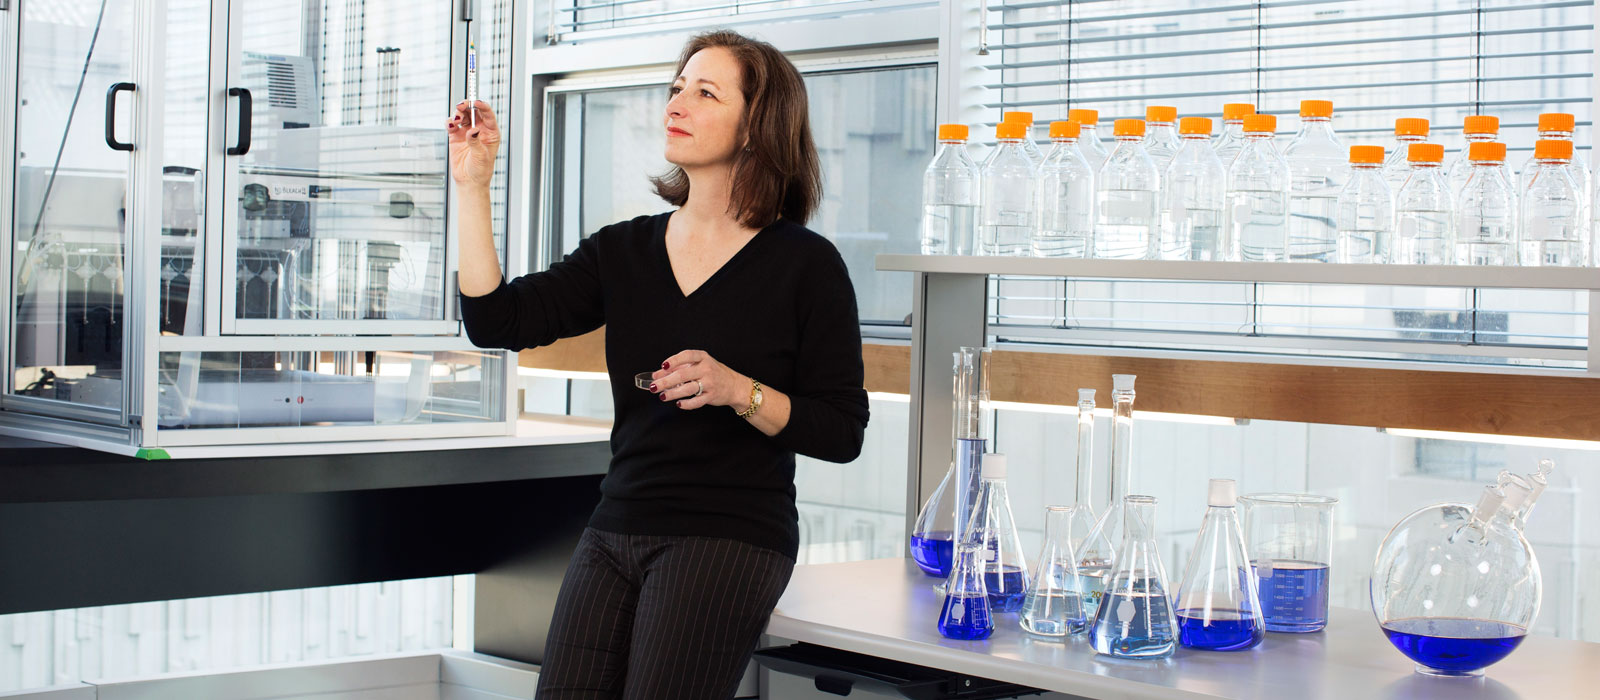 La chercheuse Molly Shoichet avec une aiguille dans un laboratoire.